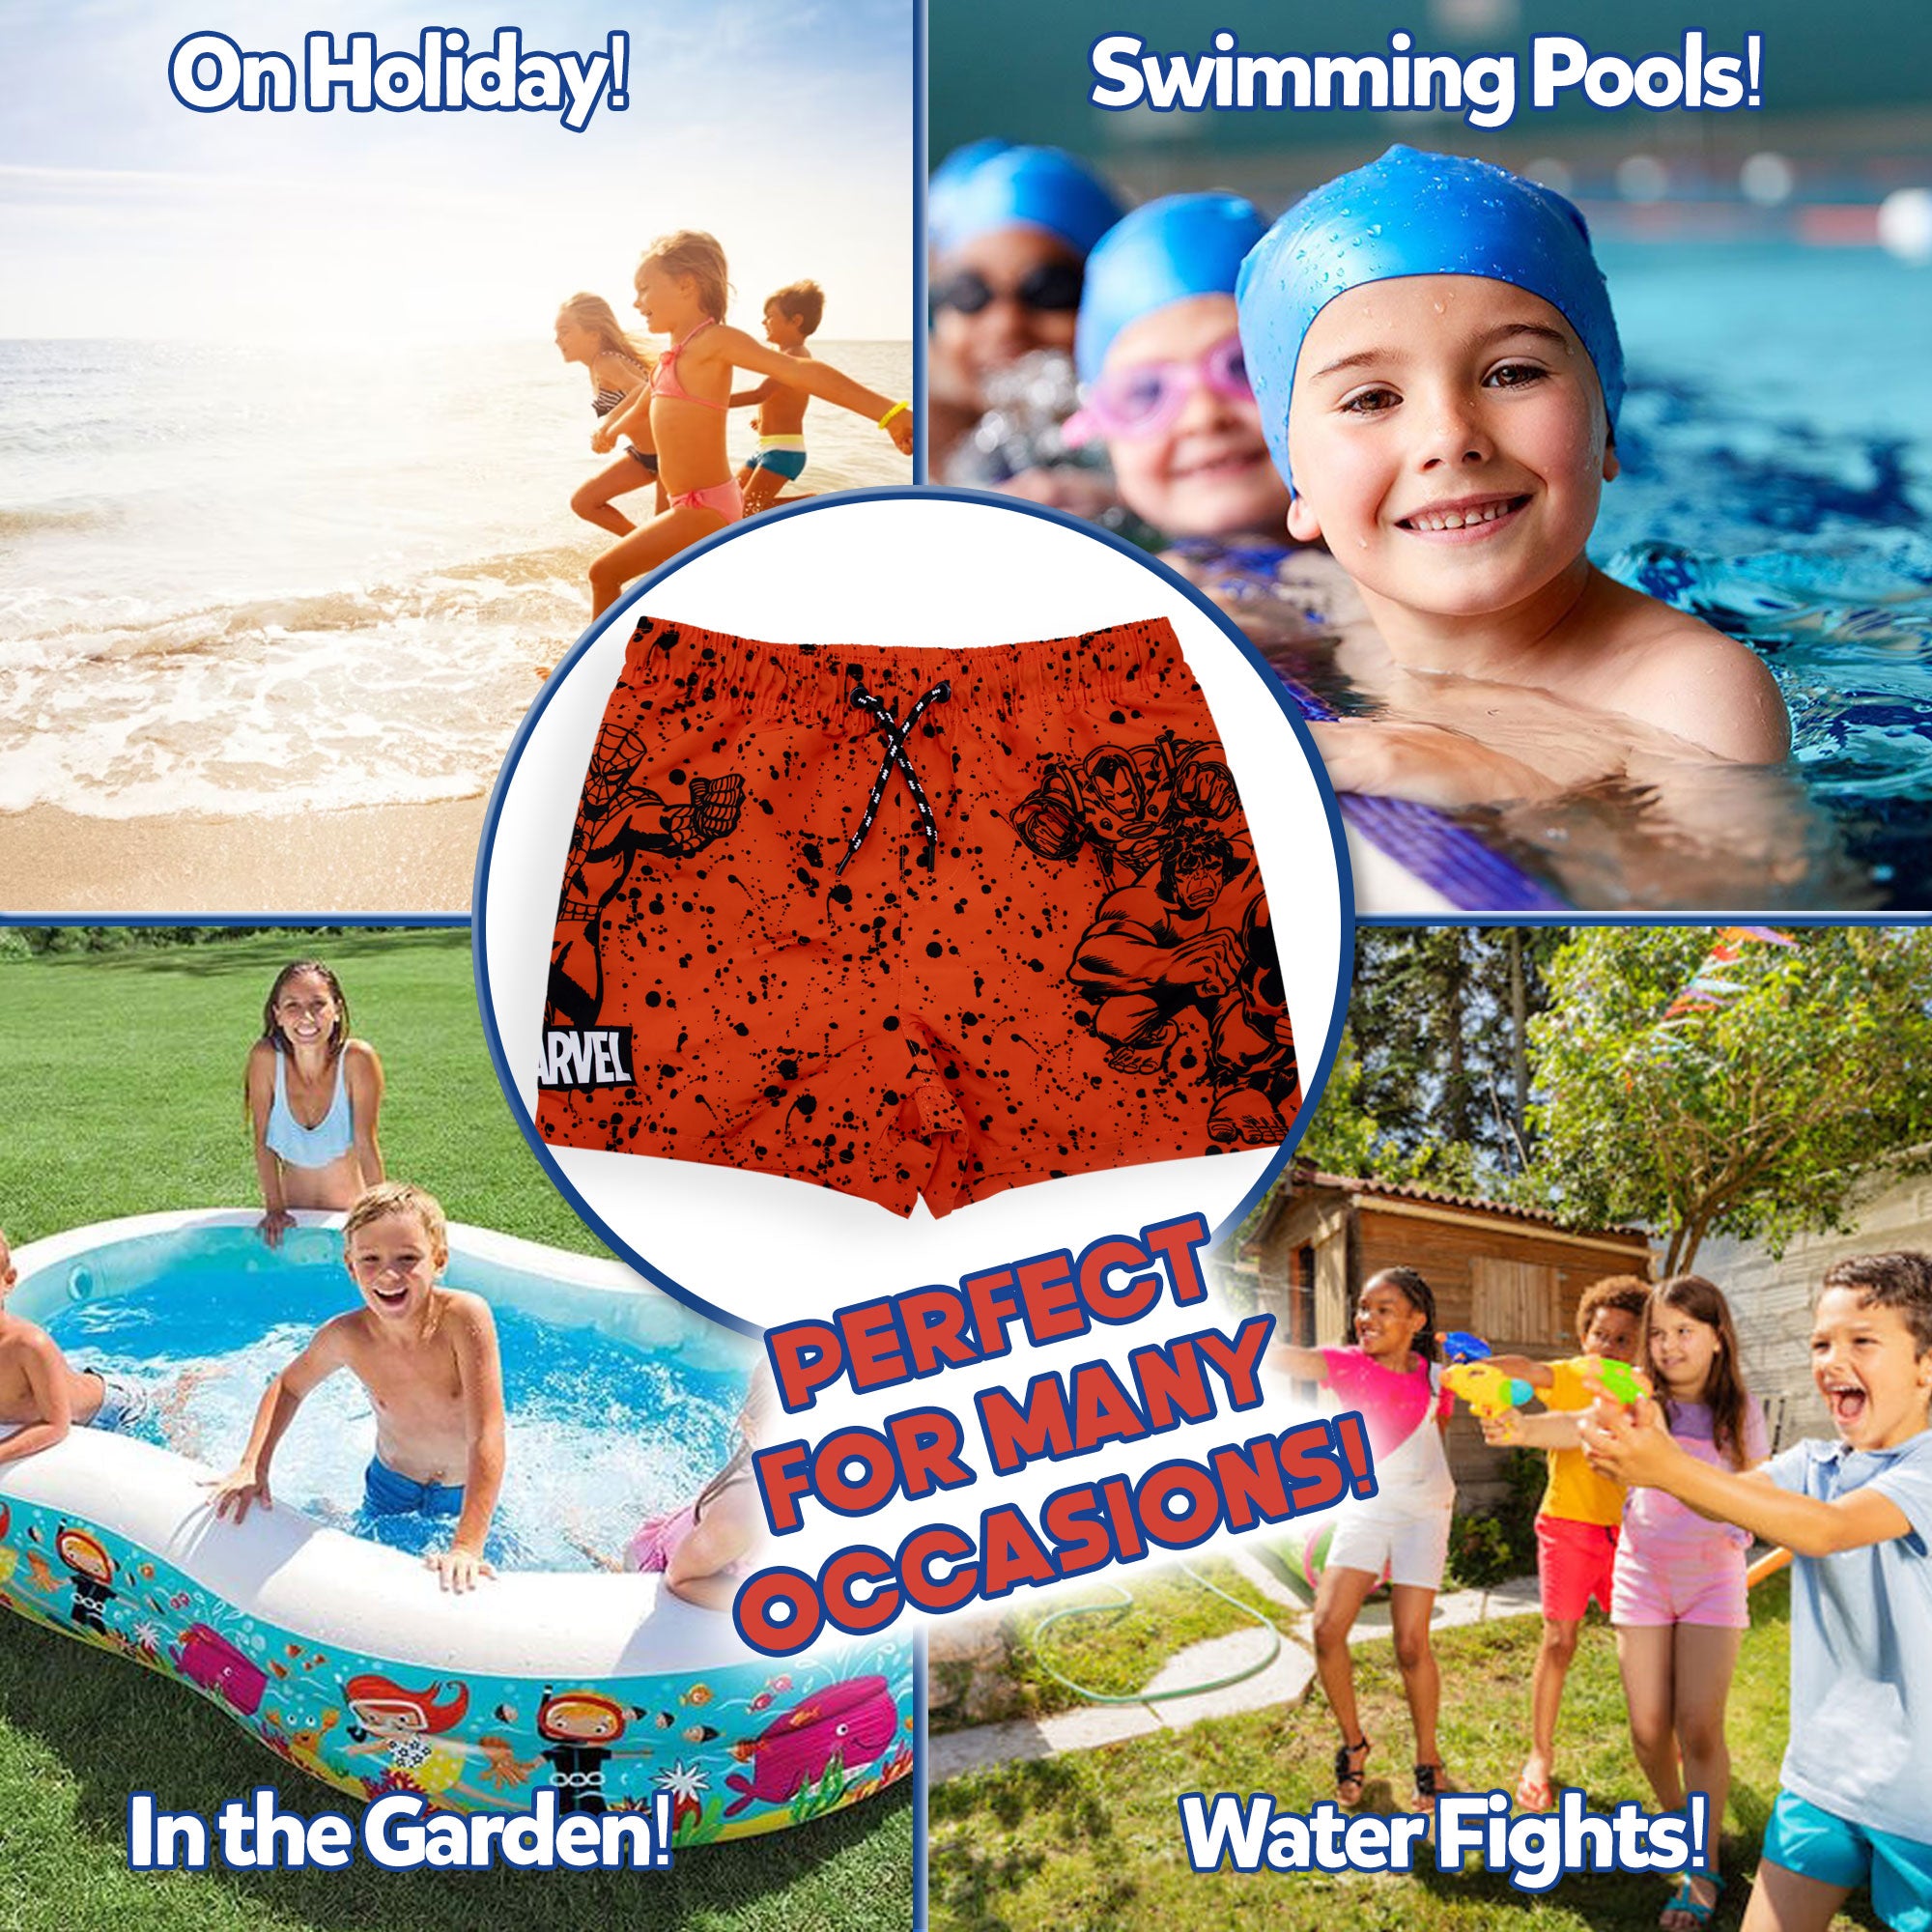 Costume da bagno per bambino Marvel Avengers pantaloncino mare fluo piscina 6737